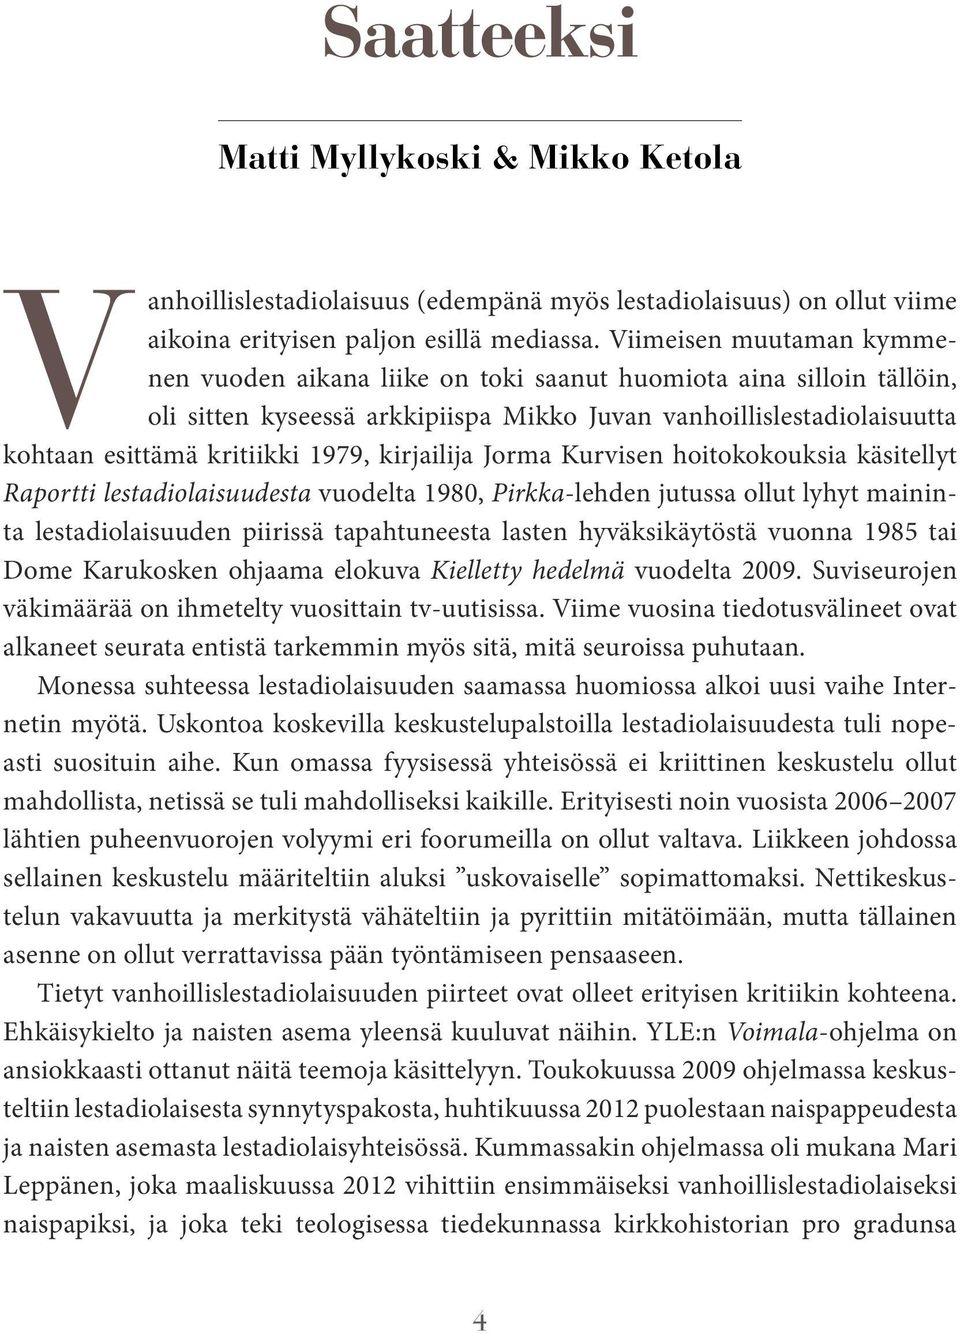 kirjailija Jorma Kurvisen hoitokokouksia käsitellyt Raportti lestadiolaisuudesta vuodelta 1980, Pirkka-lehden jutussa ollut lyhyt maininta lestadiolaisuuden piirissä tapahtuneesta lasten